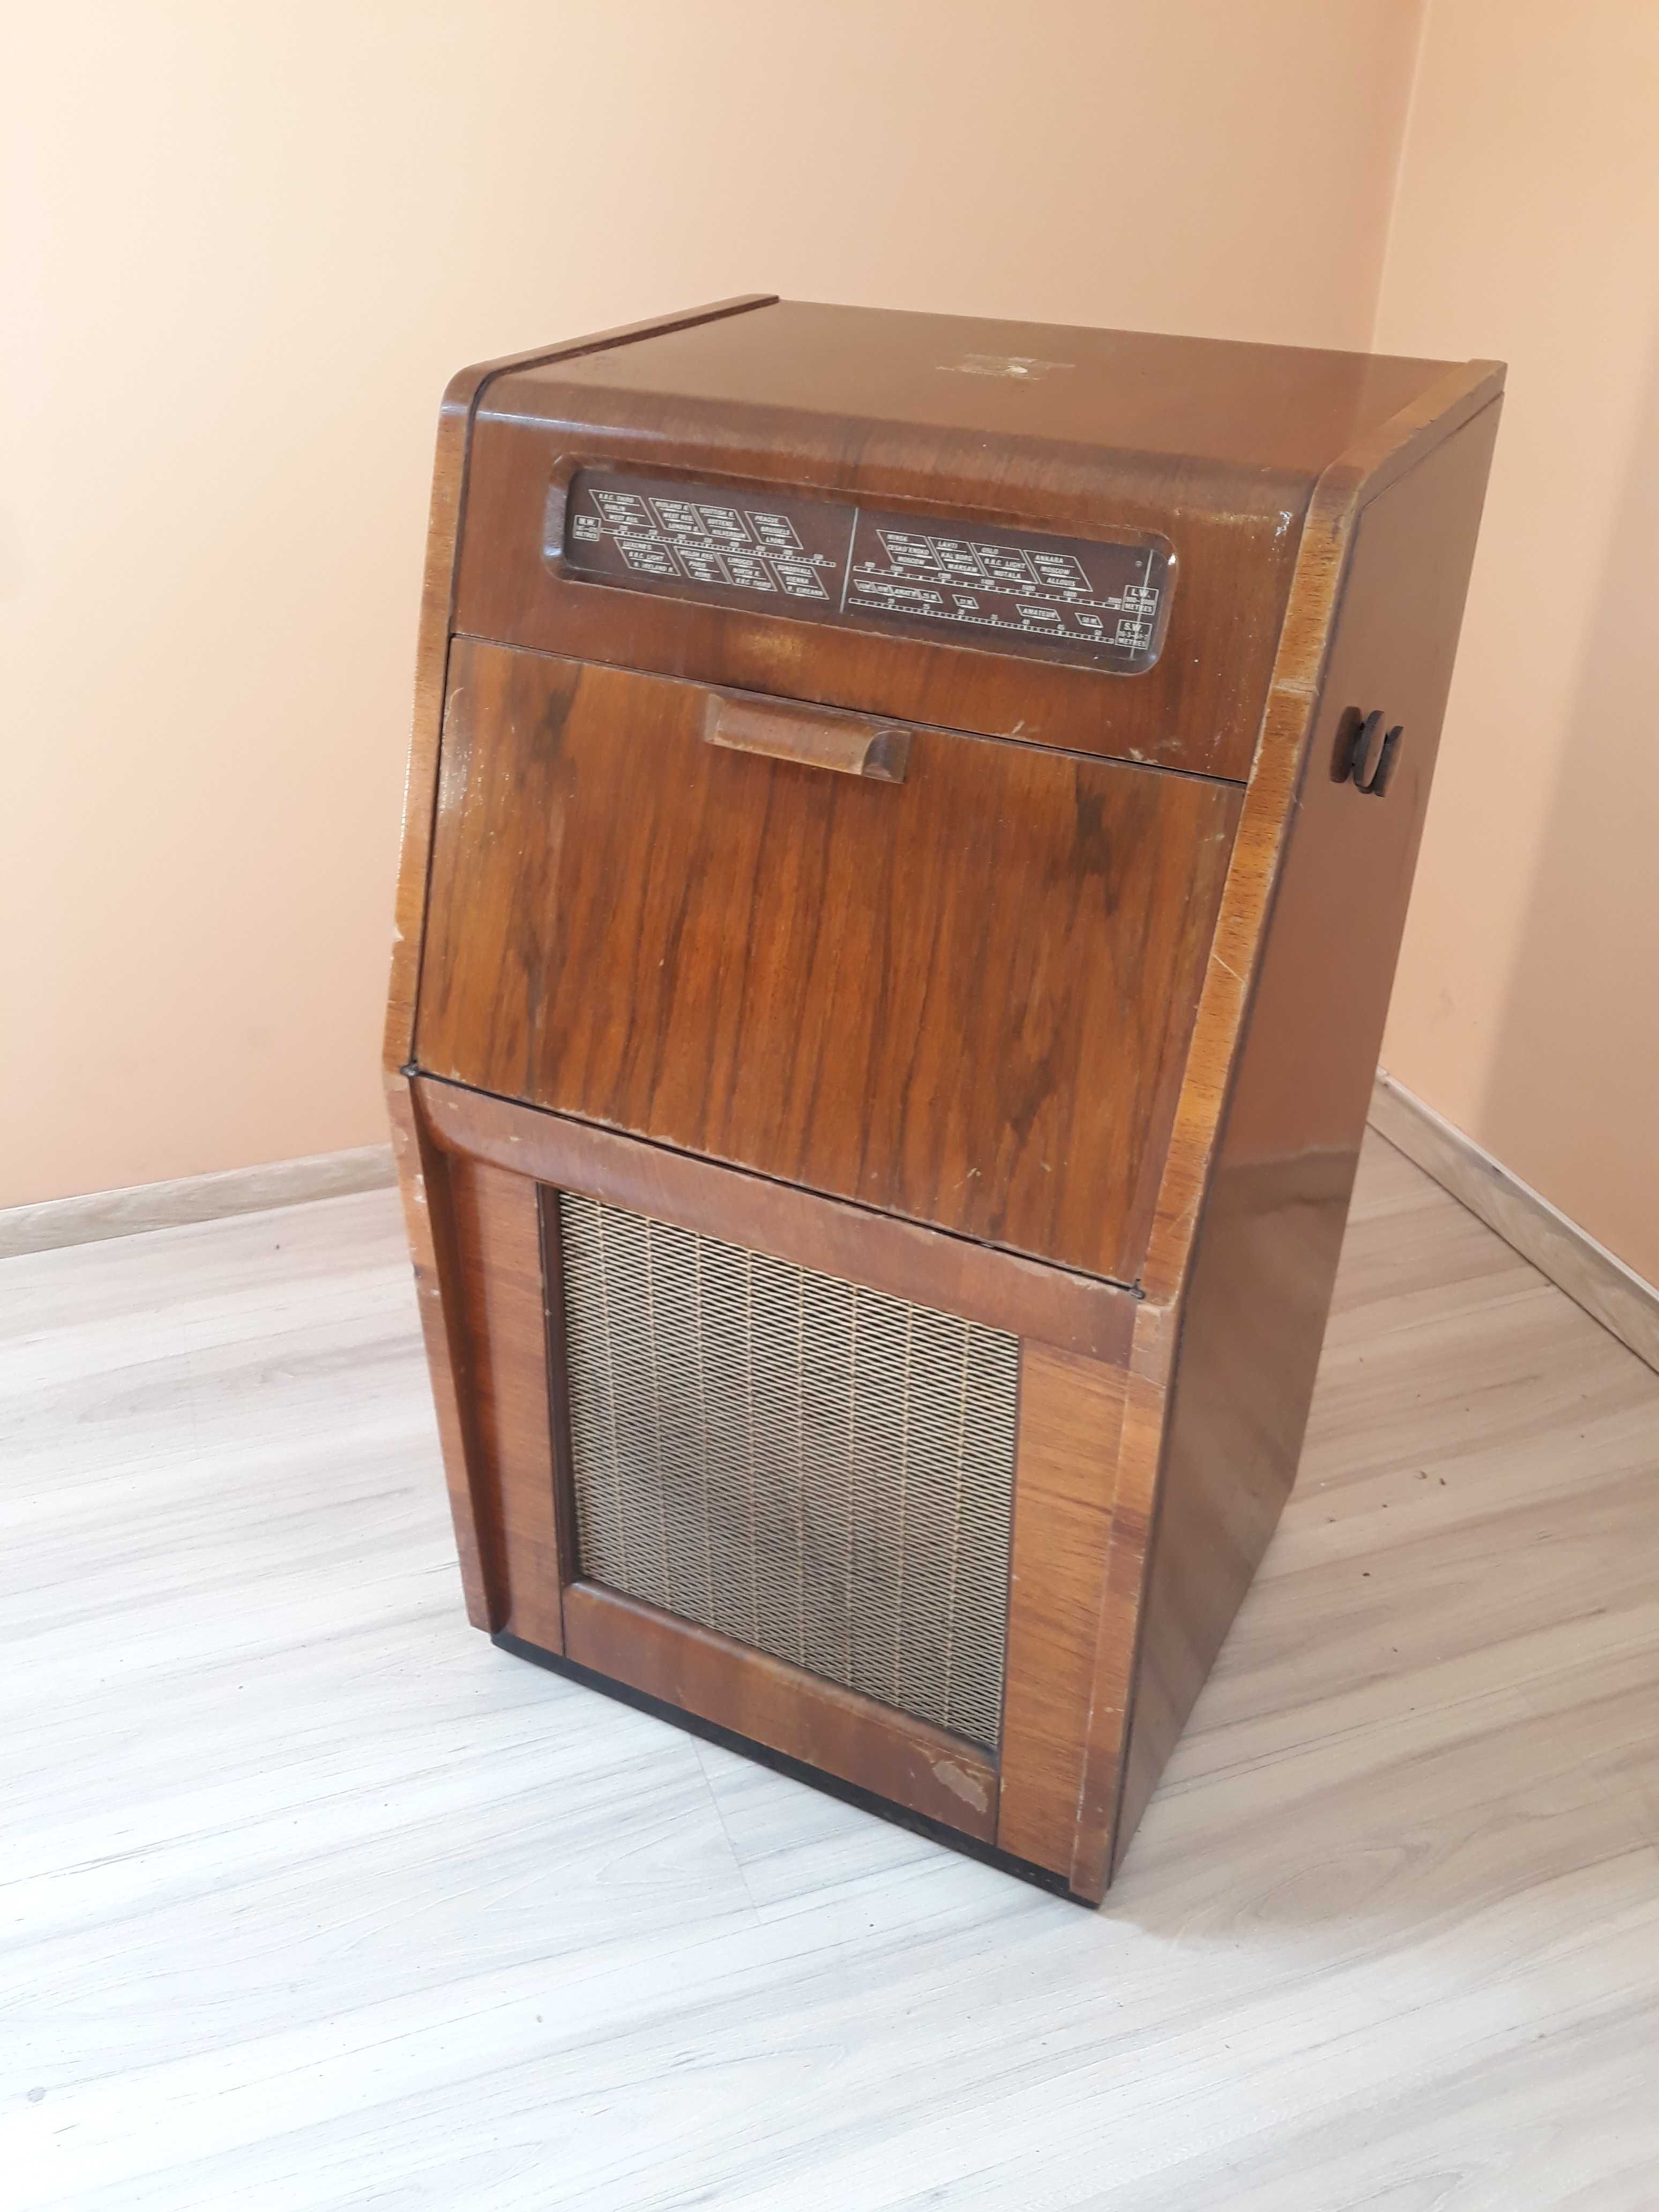 Radiola Radiogram HMV  z 1951  radio z gramofonem